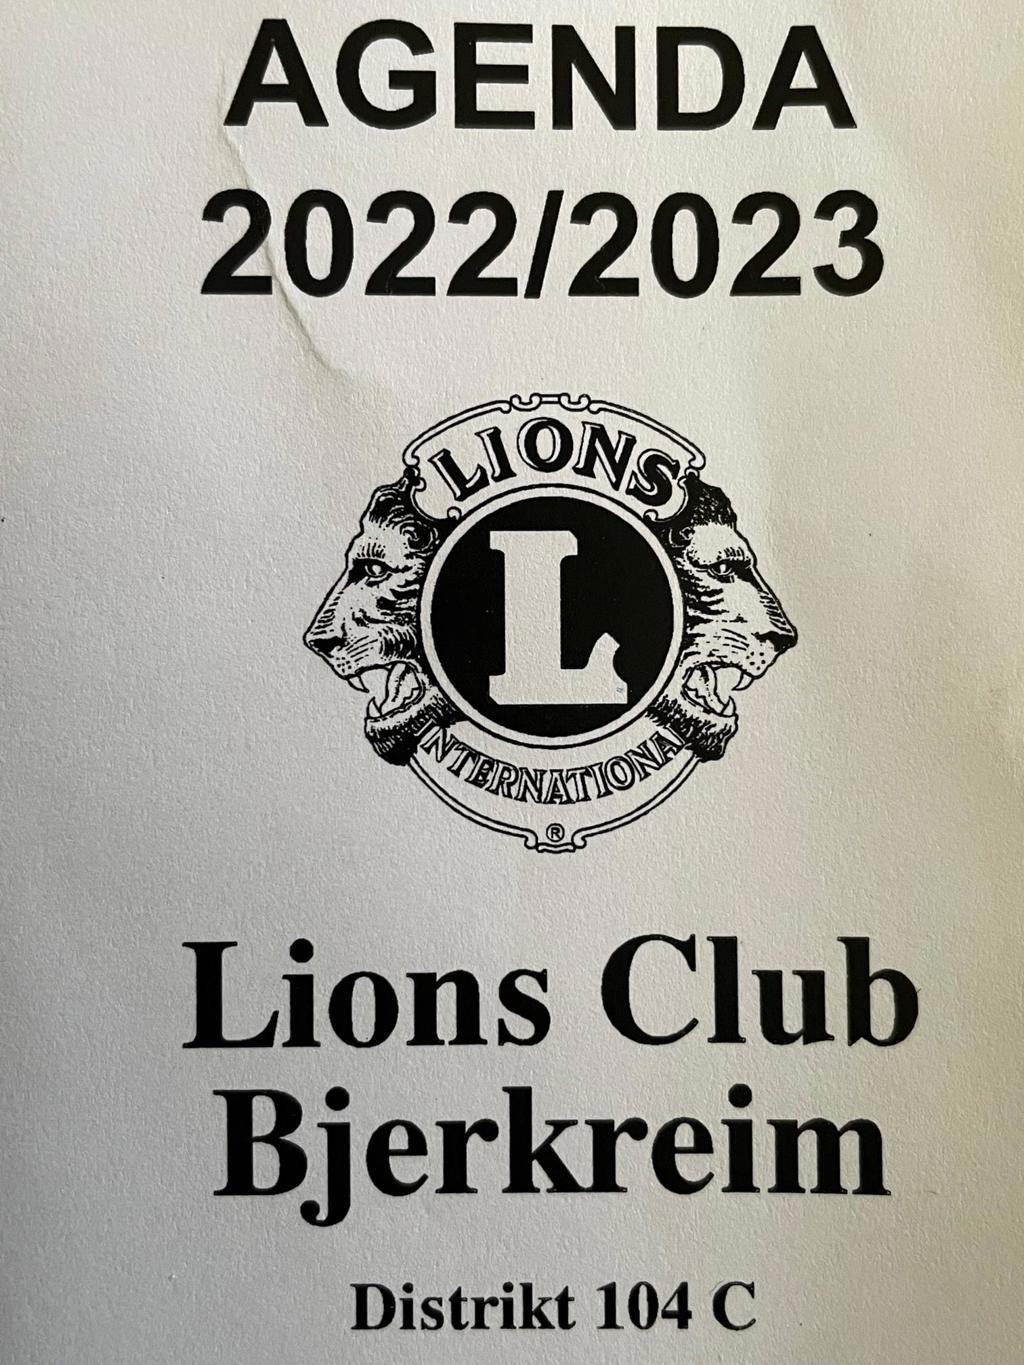 Lions agenda 2022-2023